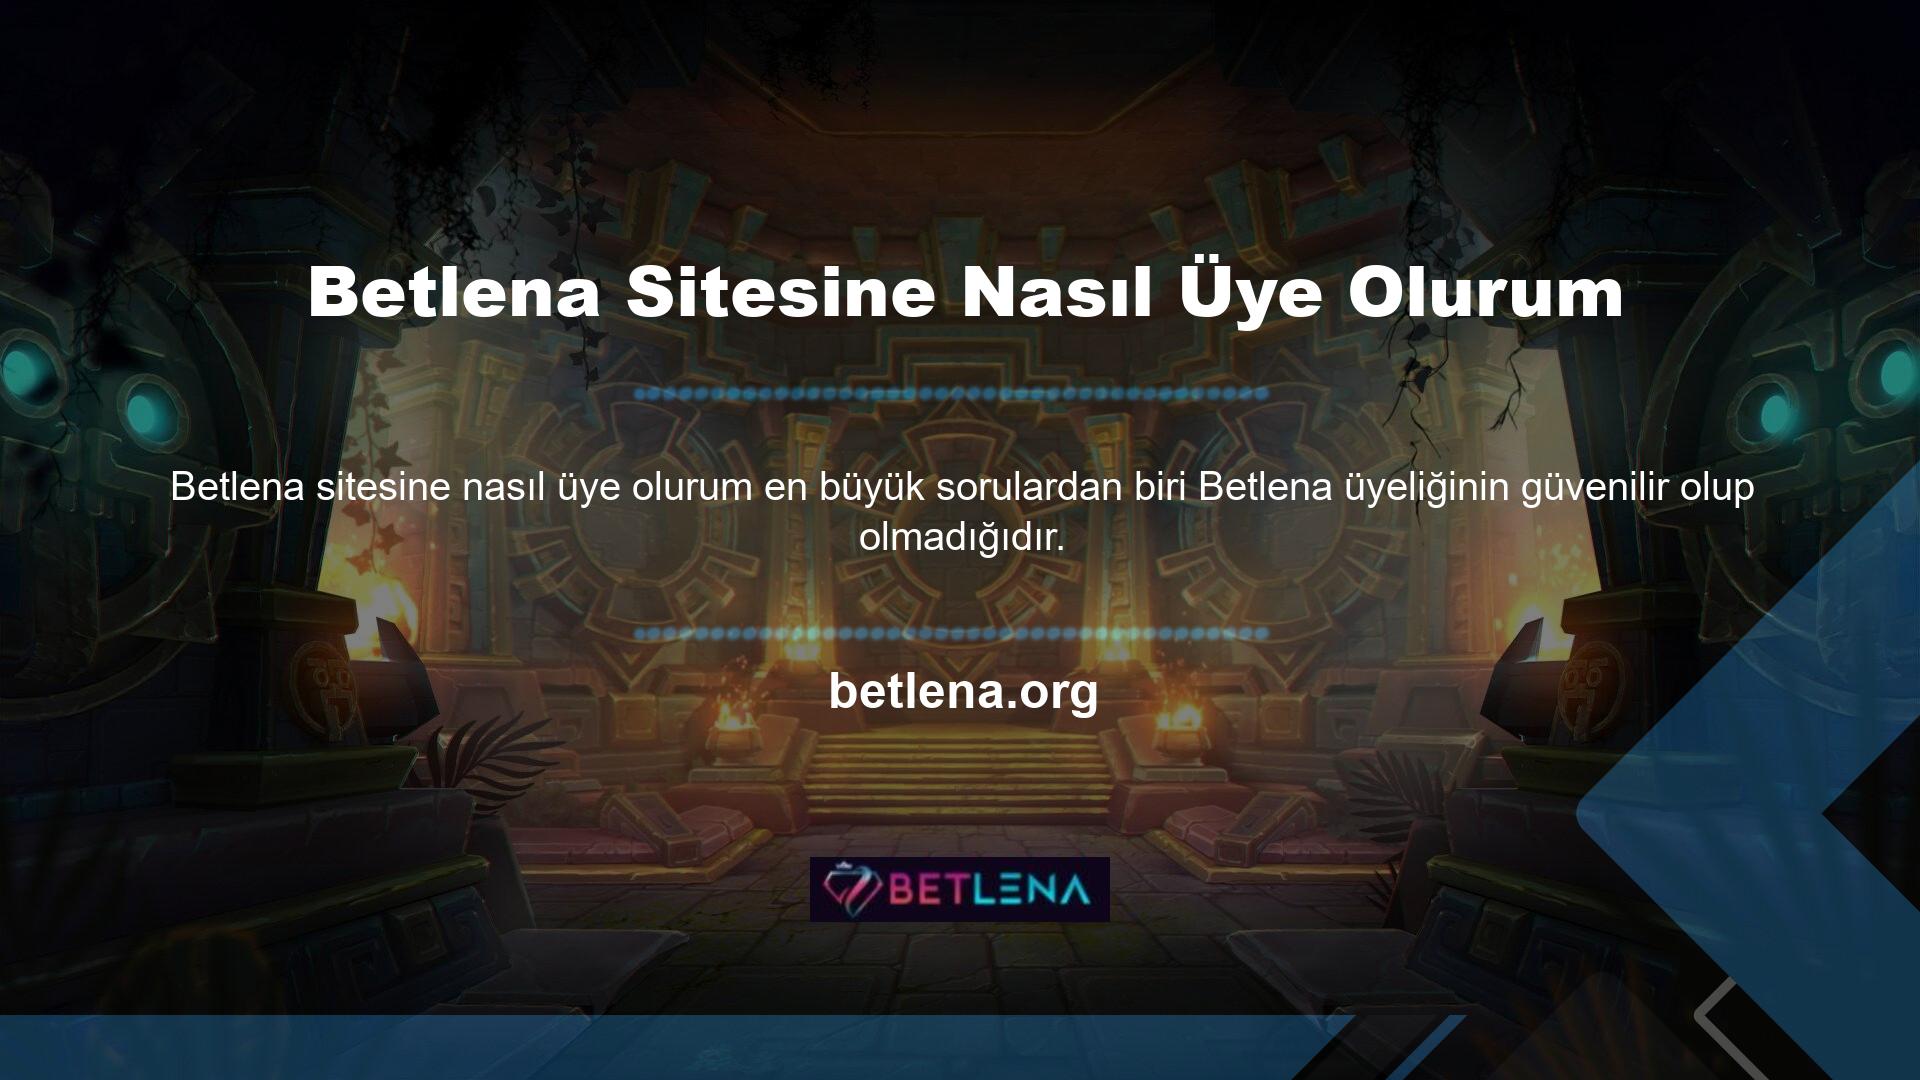 Bazı özel durumlarda Betlena hesabınızın kimlik doğrulaması web sitesi üzerinden yapılabilmektedir